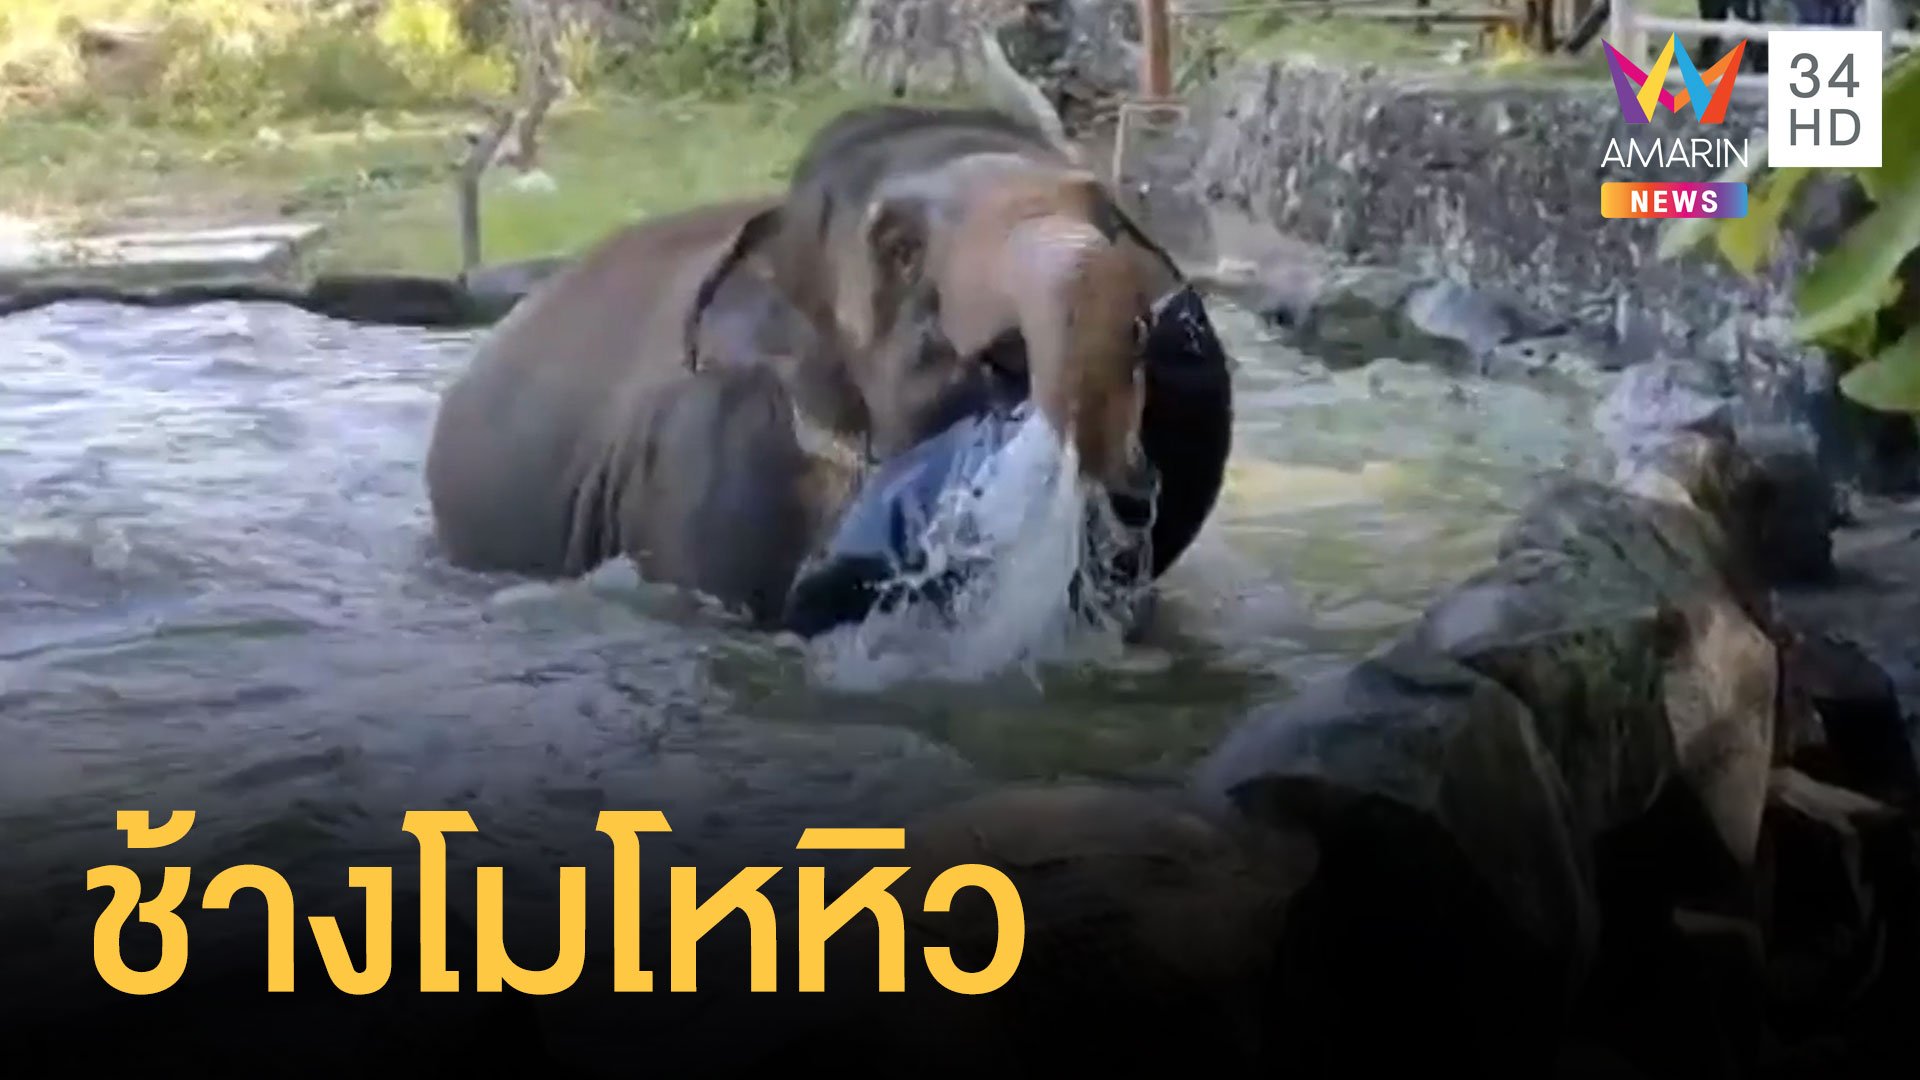 ช้างร้อนมากเล่นน้ำ กำลังจะเล่นห่วงยางแต่มันแตก | ข่าวอรุณอมรินทร์ | 16 เม.ย. 64 | AMARIN TVHD34